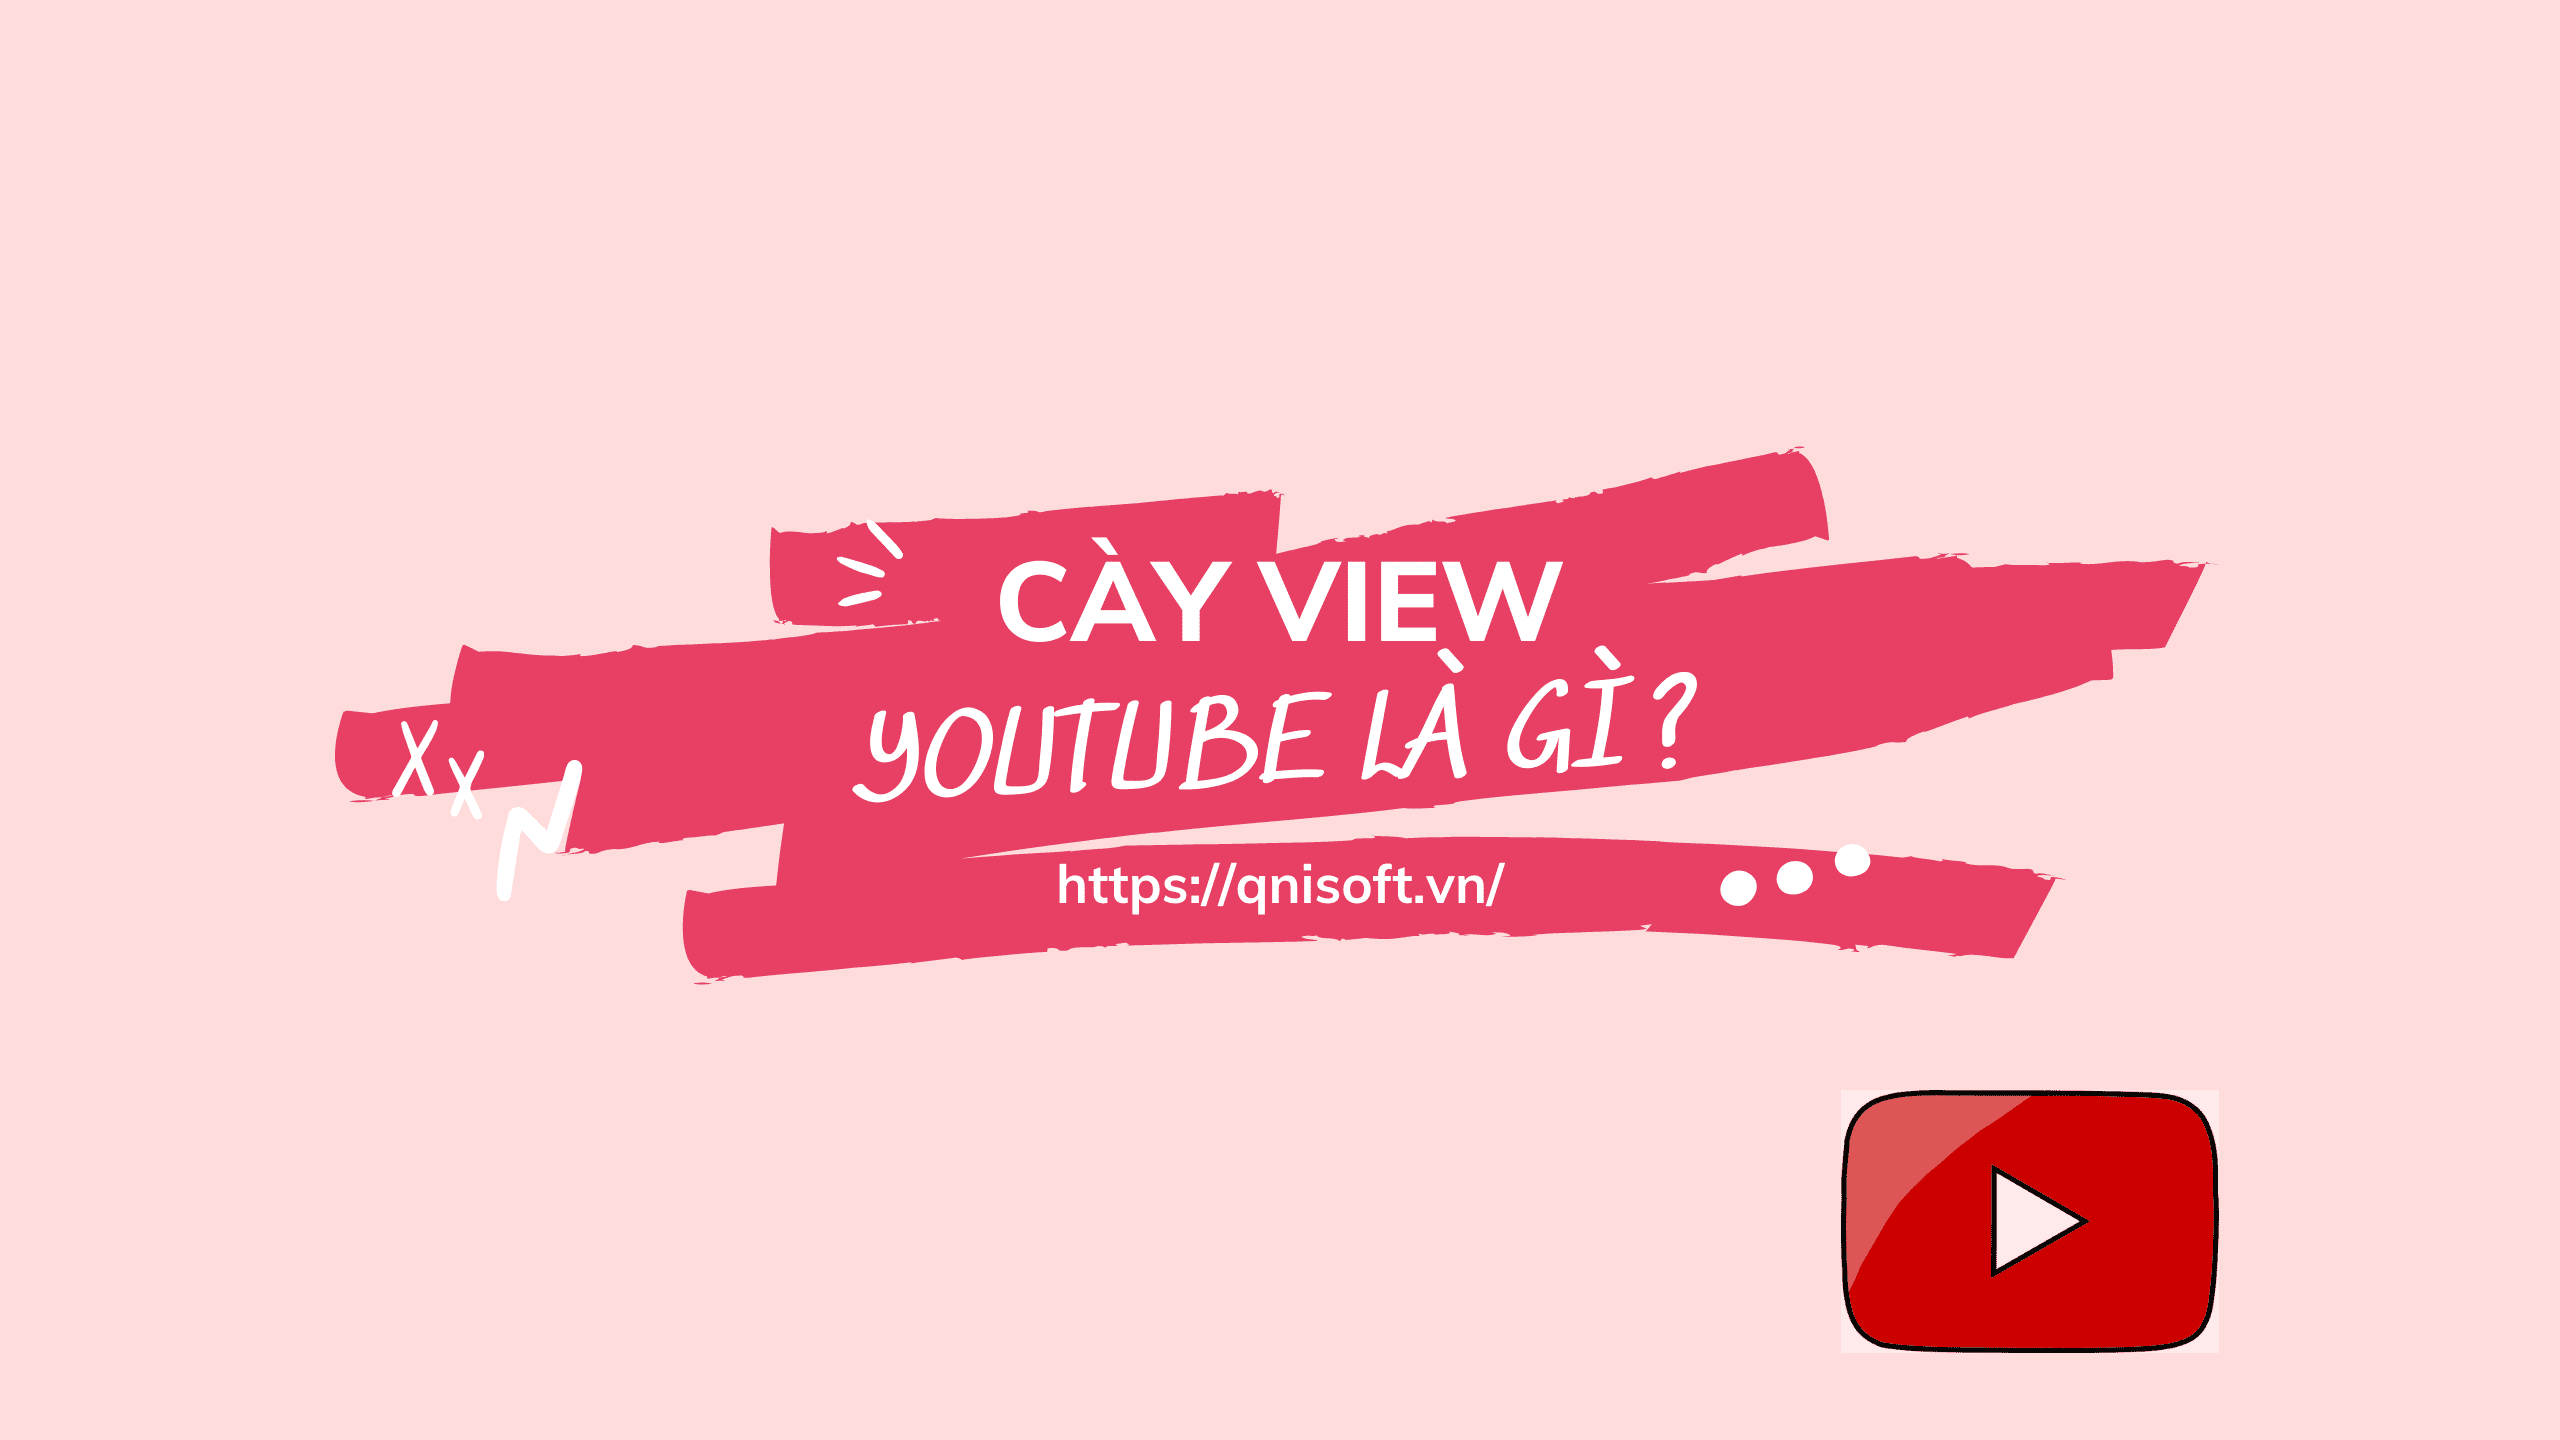 Cày view Youtube là gì?